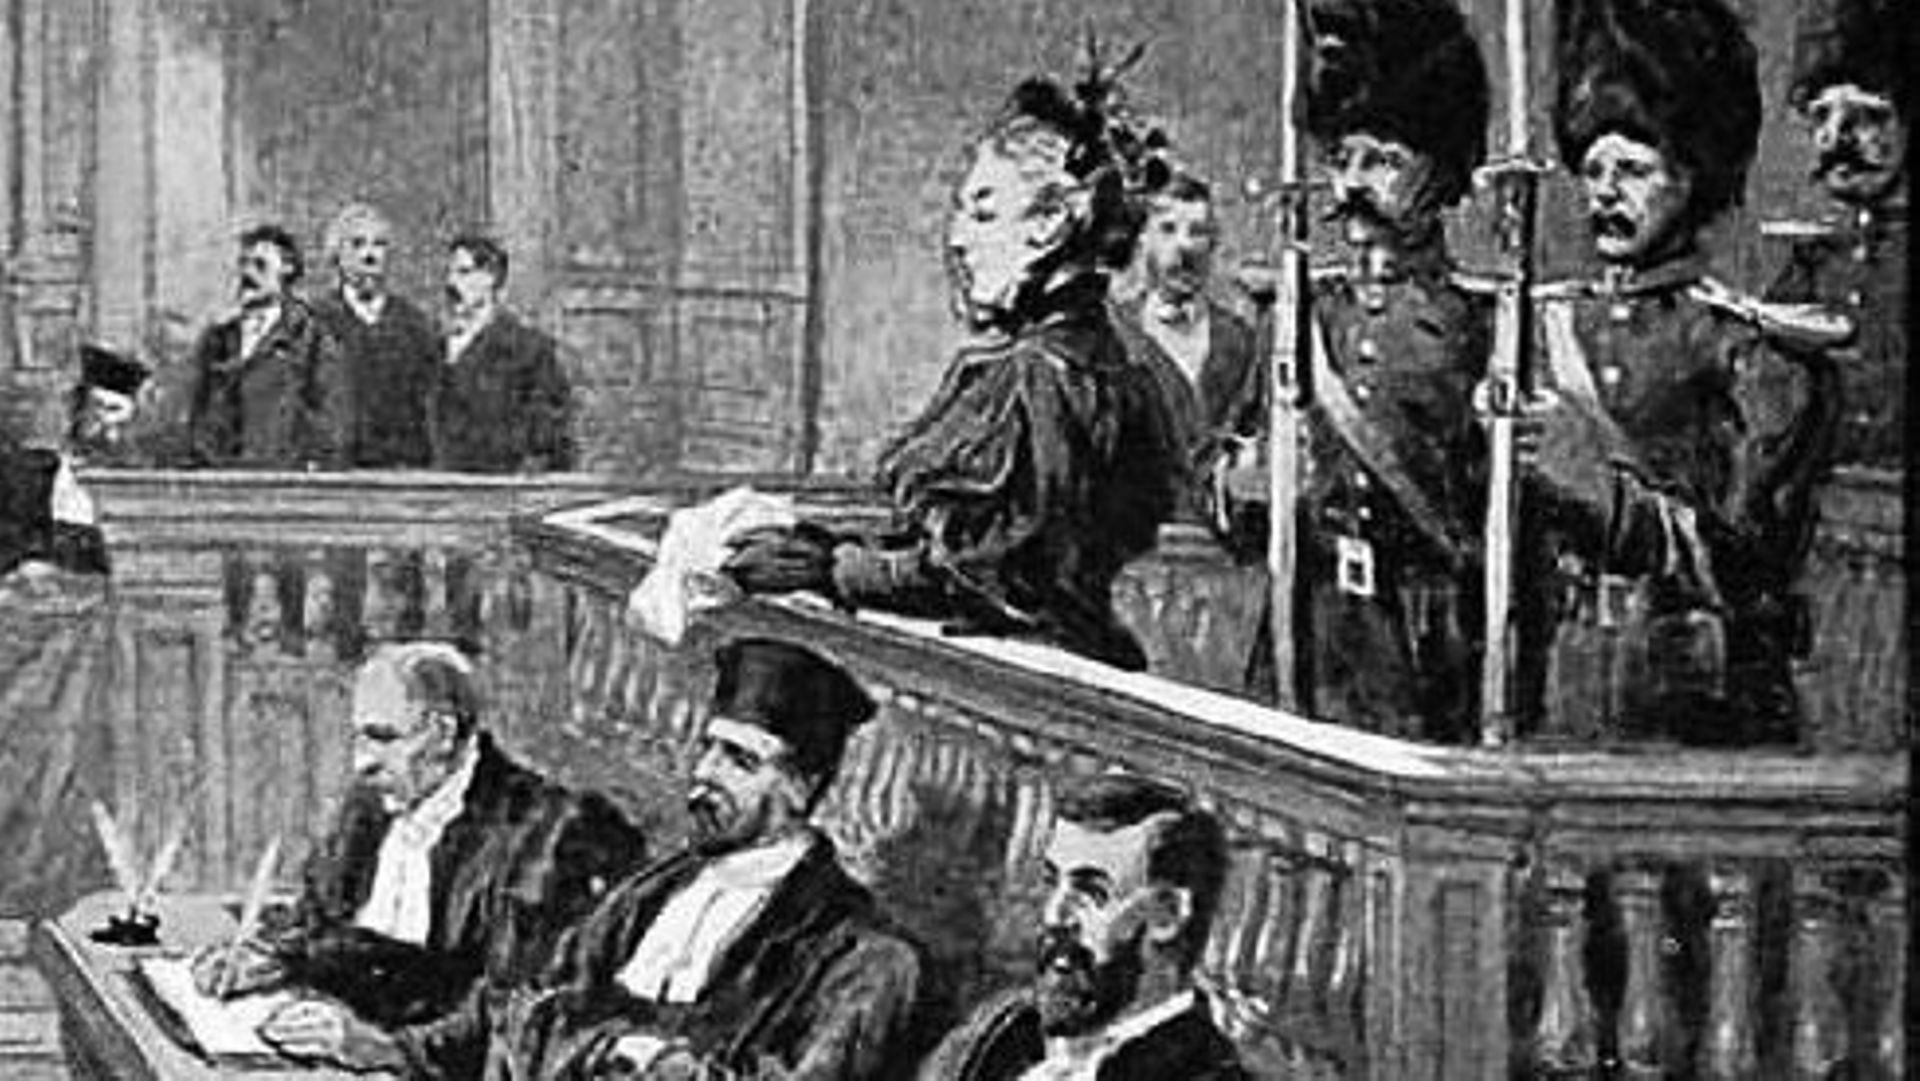 Marie Thérèse Joniaux née Ablay, est accusé du meurtre de son frère et d'au moins deux autres personnes. Dessin réalisé par Staniland en 1895 dans "The Chronic".

